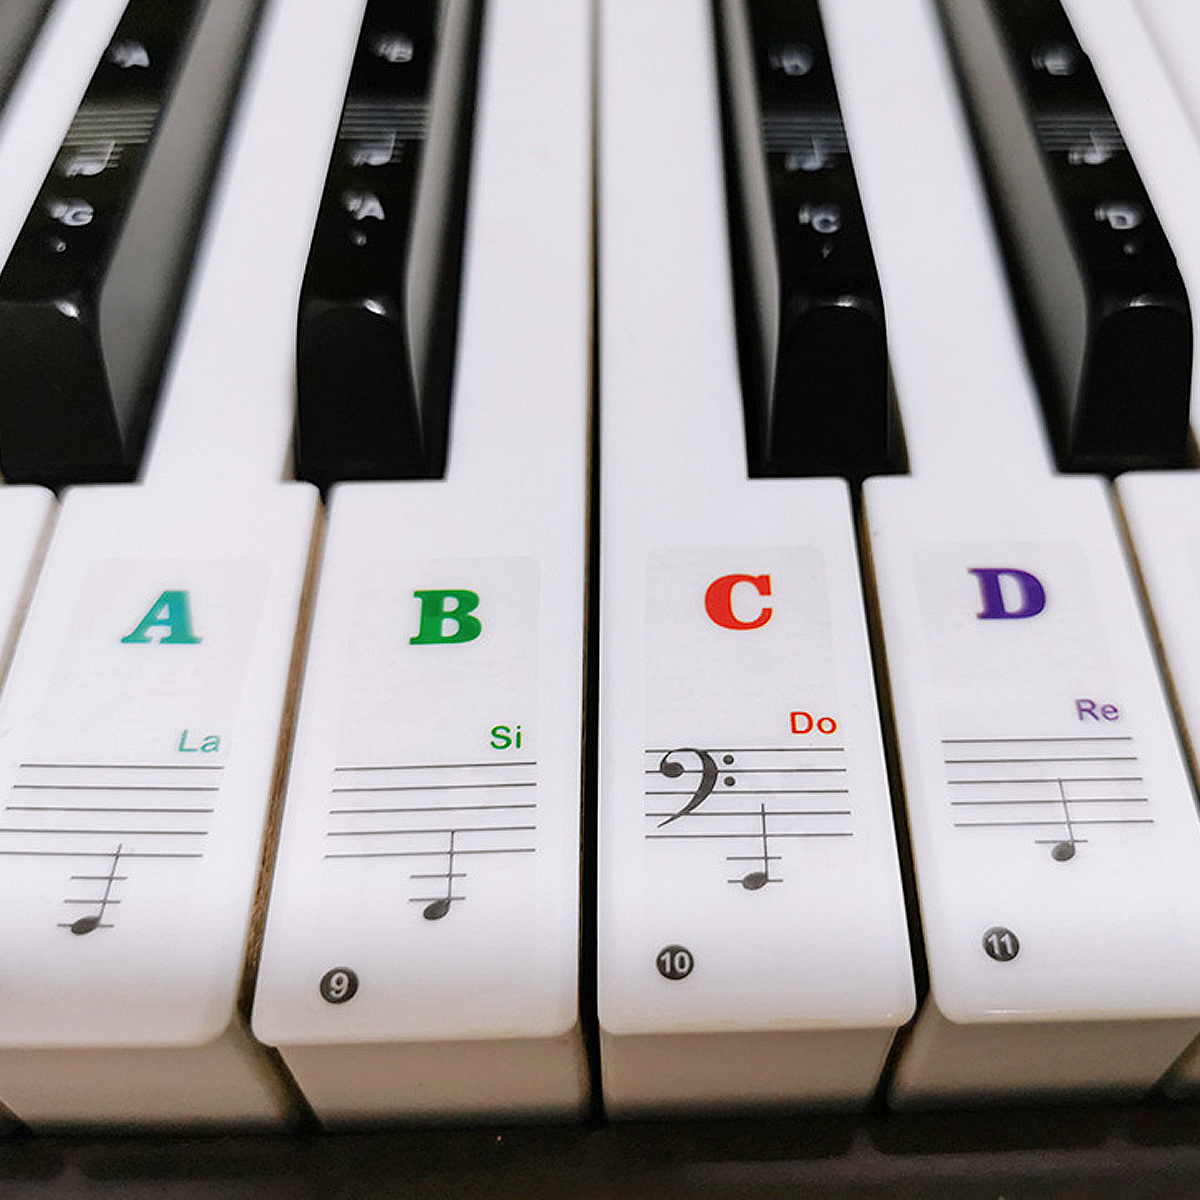 Yosoo Clavier électronique amovible de 88 touches piano note touches  blanches autocollants étiquettes pour les débutants, autocollant amovible  piano, autocollant de clavier